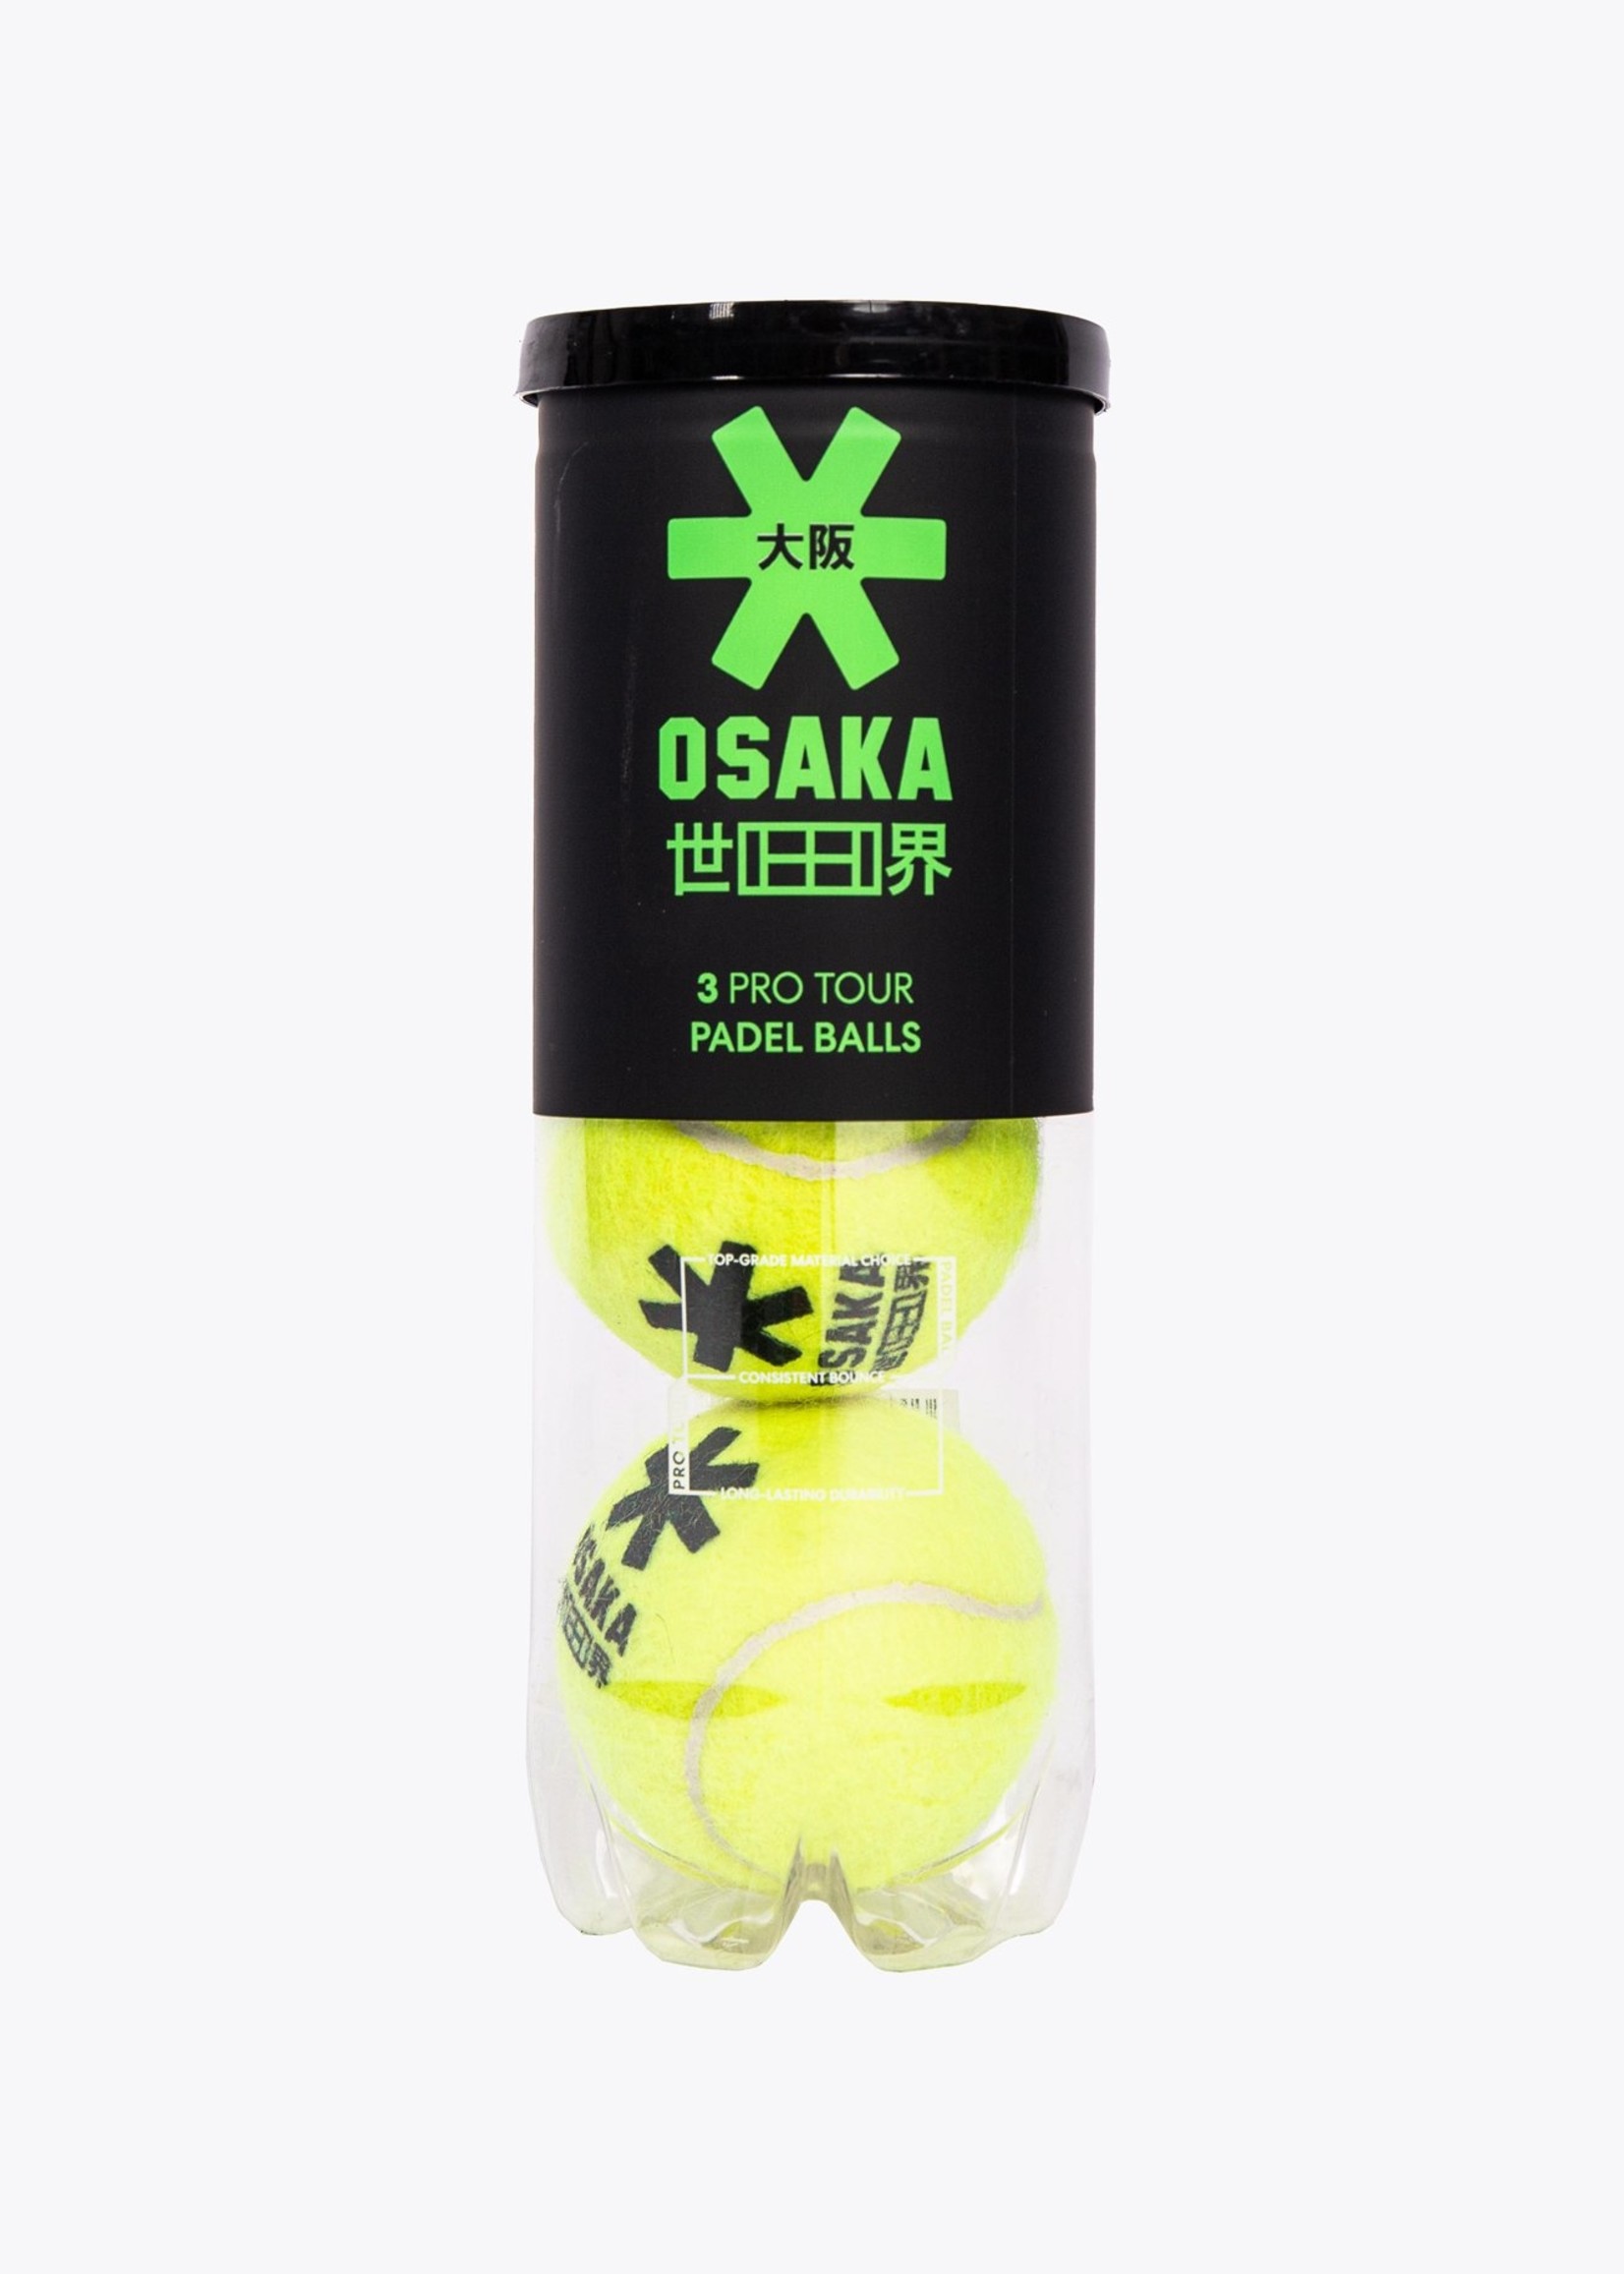 Osaka Osaka Padel Pro Tour Balls